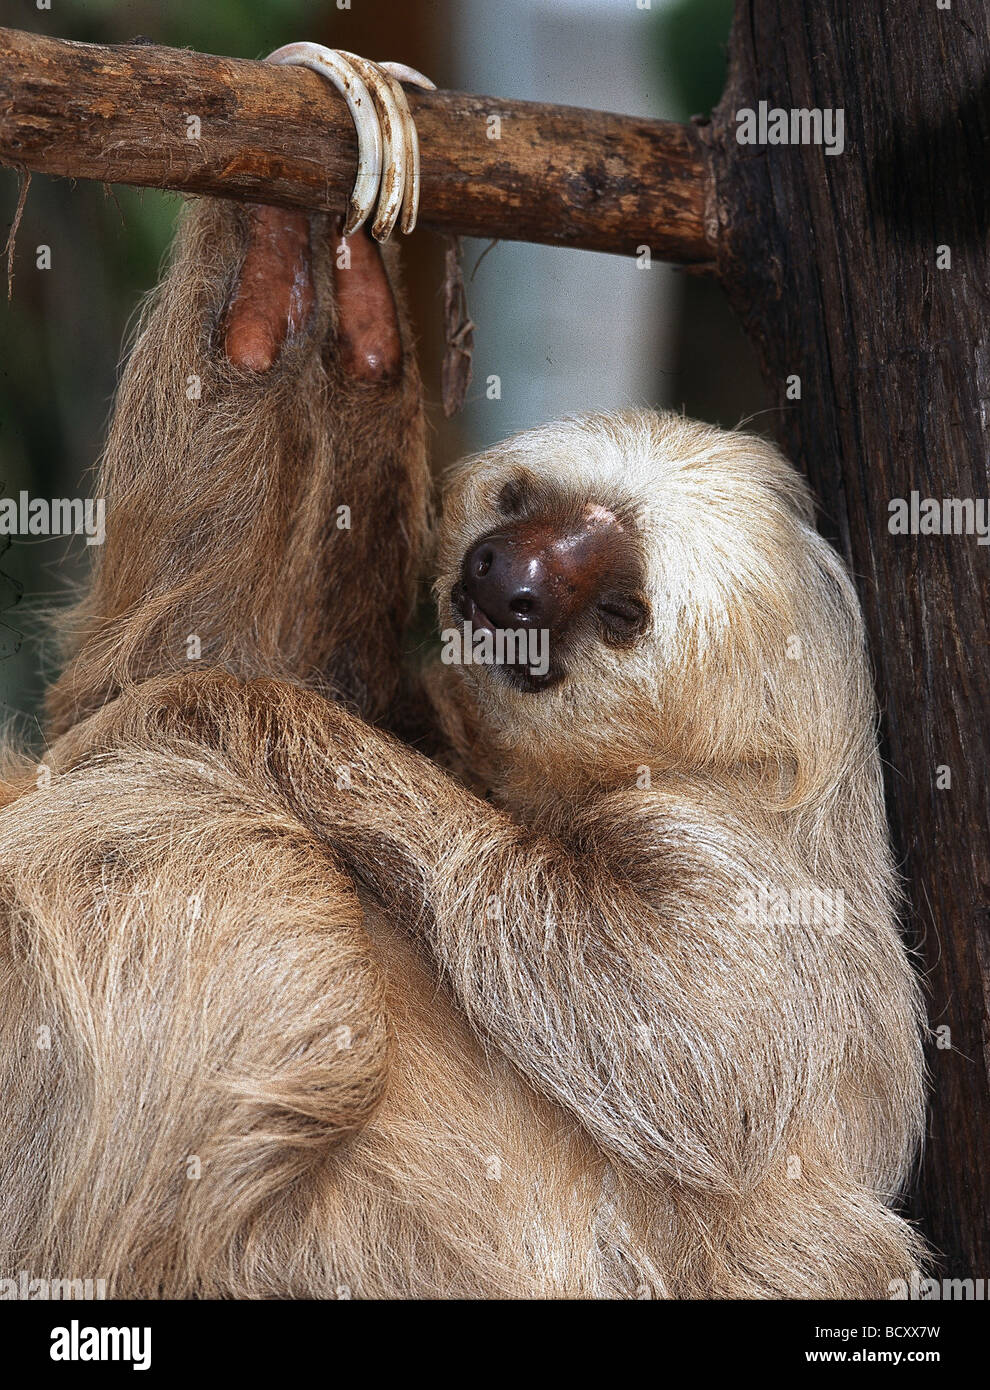 Choloepus Didactylus / zwei – Finger Faultiere in den Baum hängen Stockfoto